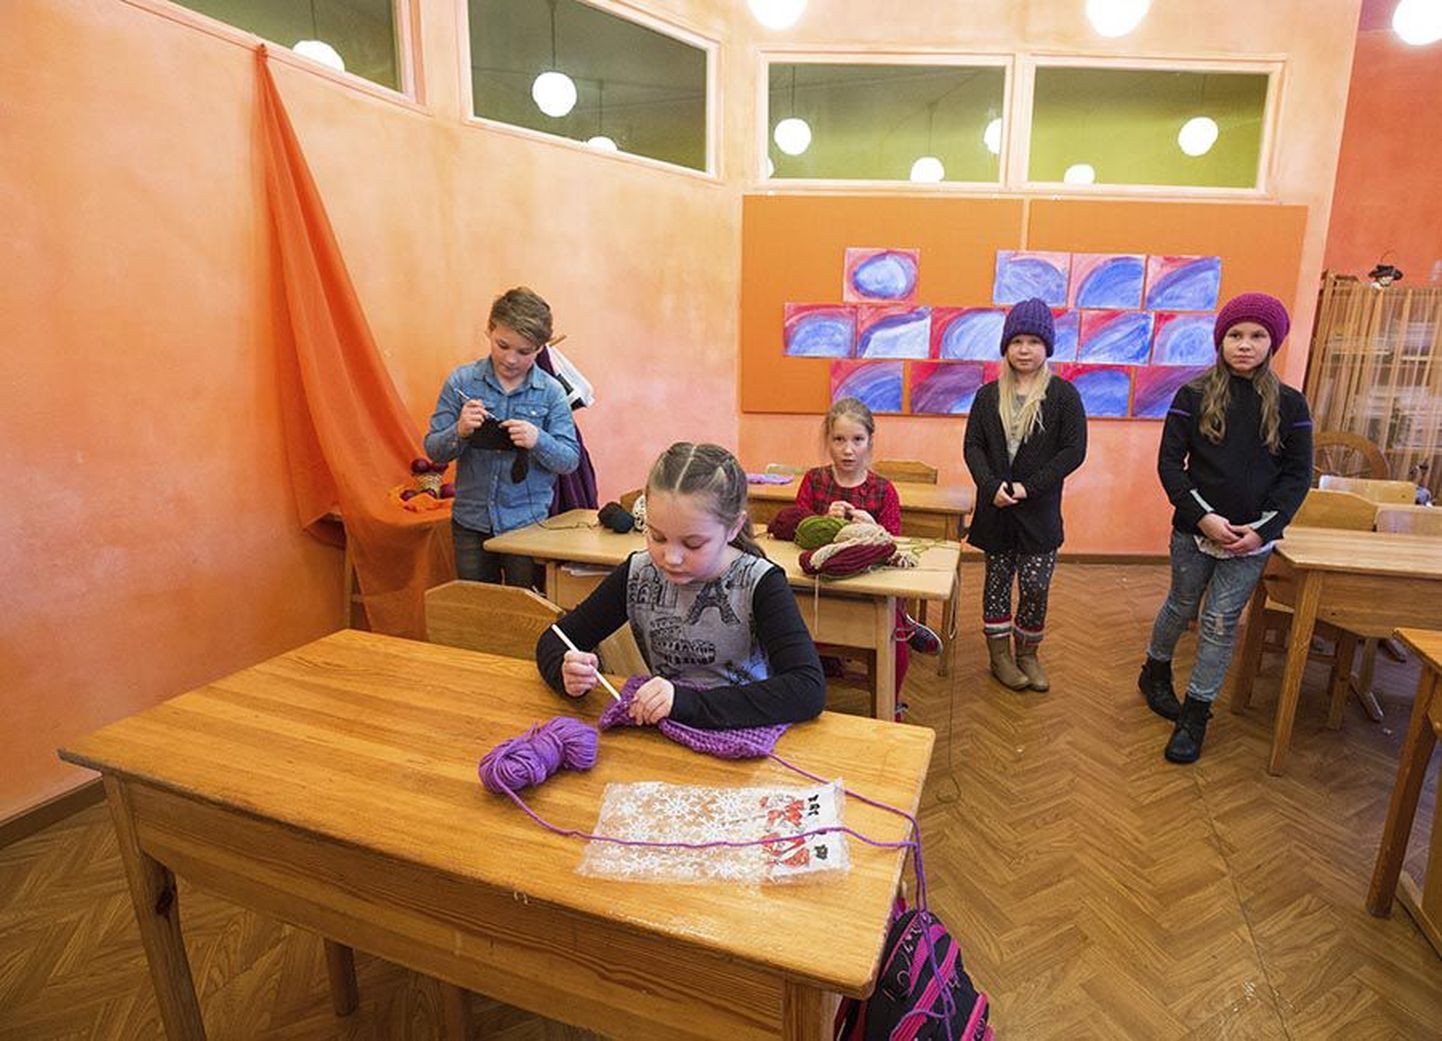 Viljandi waldorfkoolis õpib 87 last. Pildil on kolmanda klassi õpilased (vasakult) Markus Järvsoo, Lisette Palumäe, Marta Järve, Marii Tammemäe ja Emma-Lovise Kivilaan.